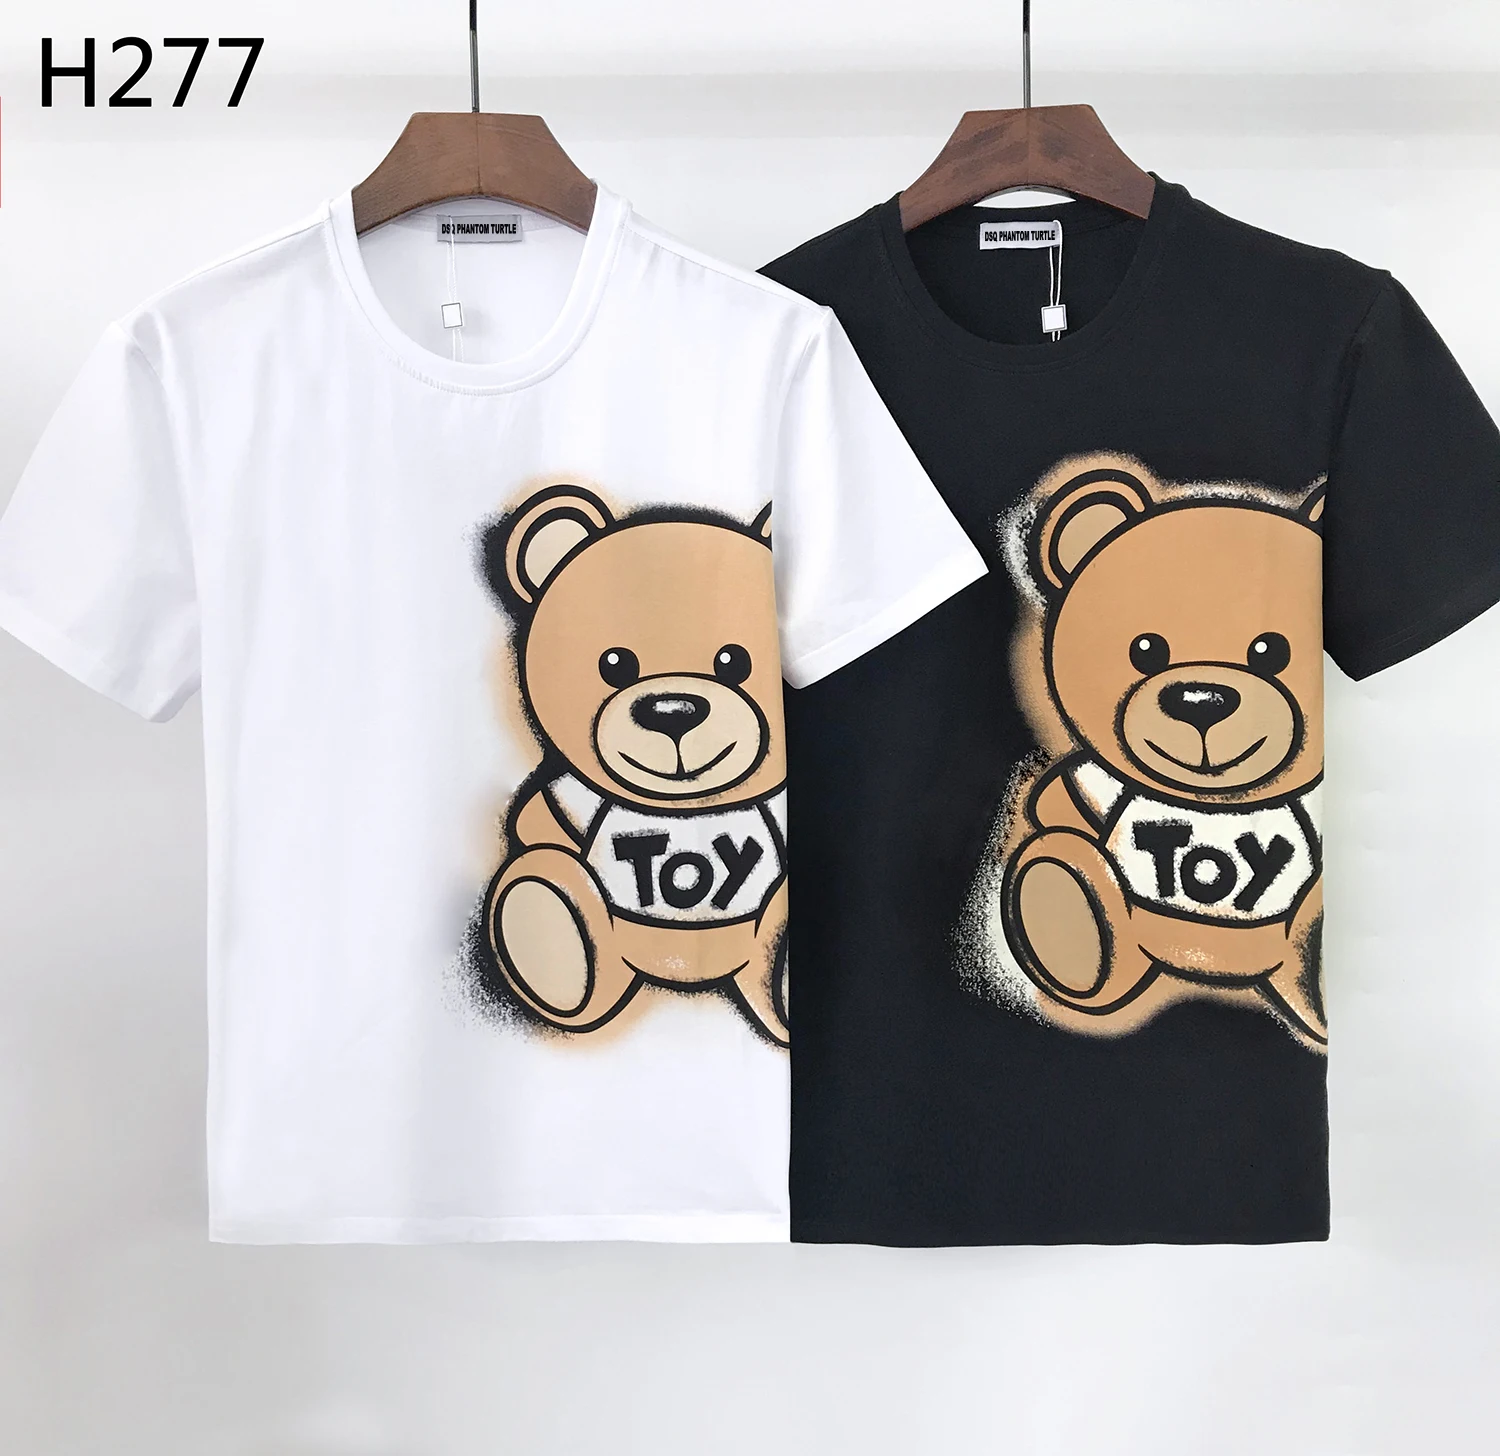 

DSQ PHANTOM TURTLE 2021 Summer New T-shirt Men Fashion Print 100% Cotton T Shirts Breathable Quality Tees H277